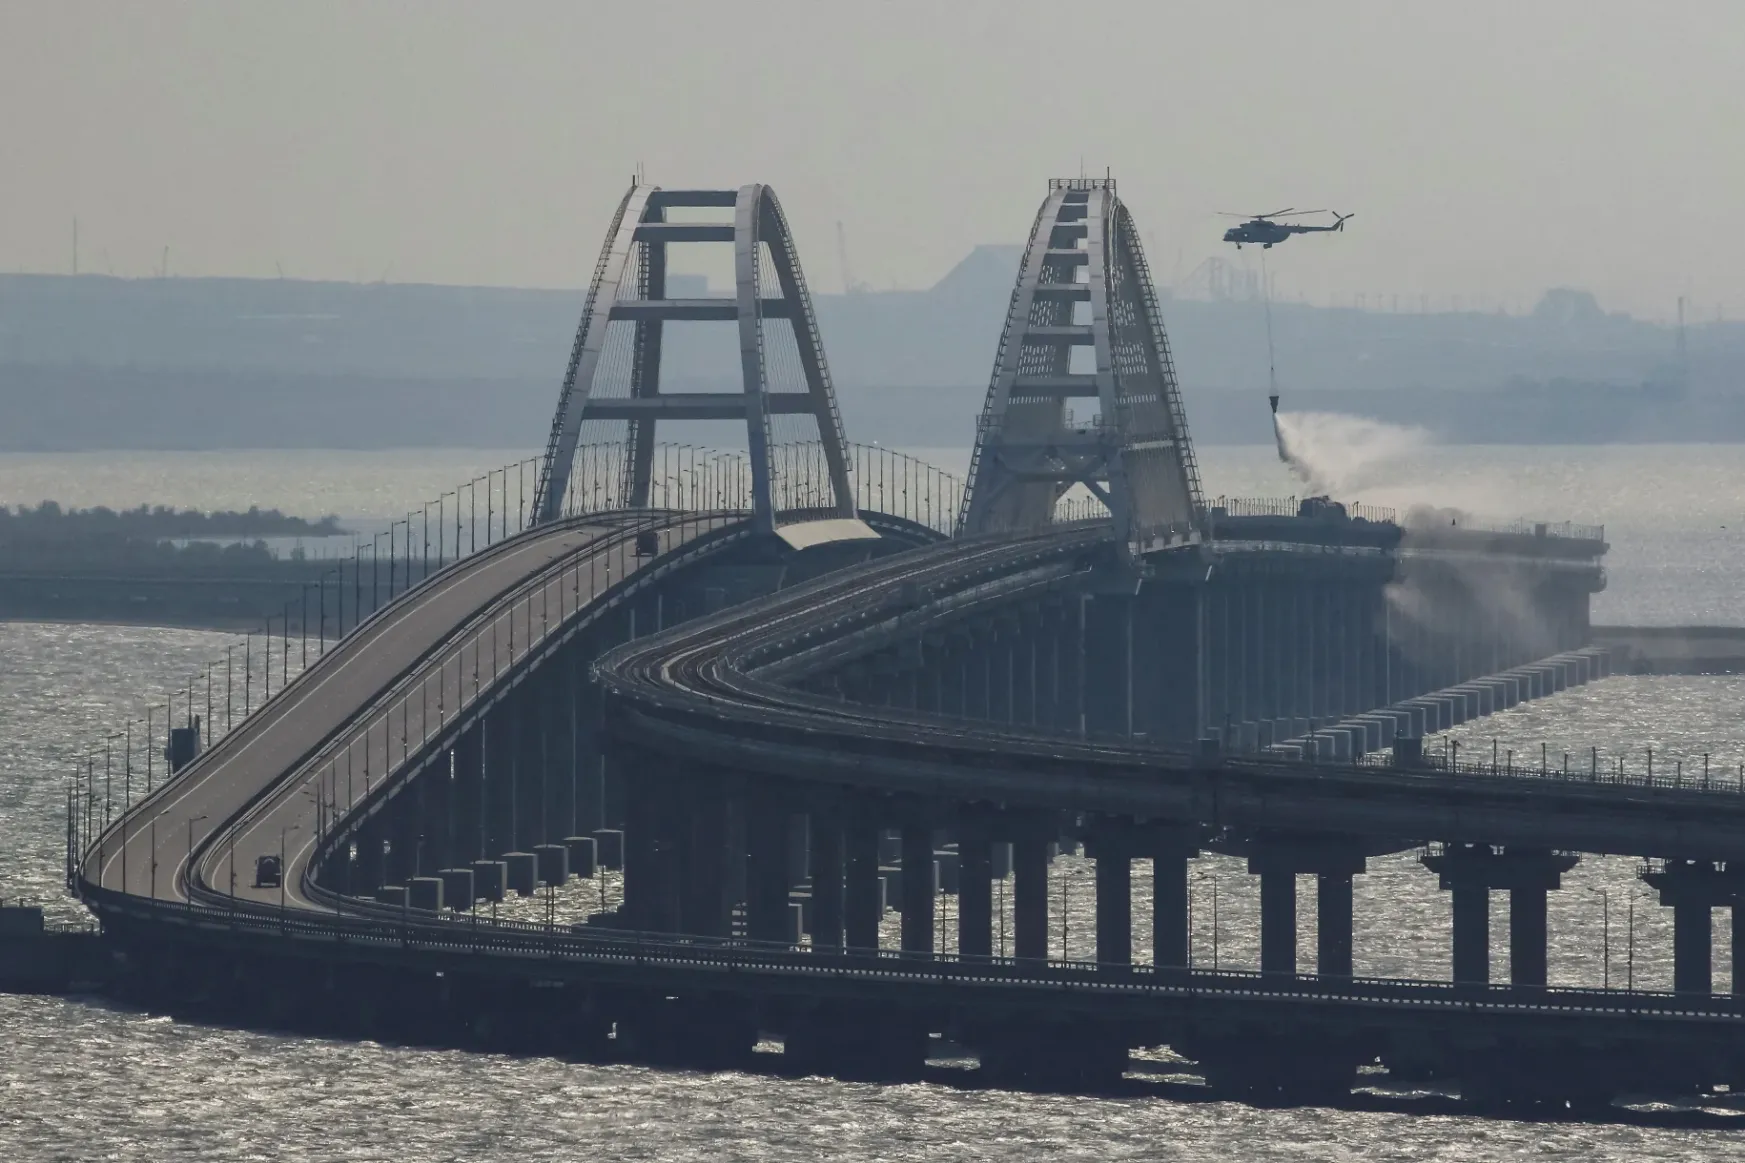 Csőbe húzott kamionos? Titkos ukrán rakéta? – még mindig sorjáznak az elméletek a kercsi híd felrobbantásáról